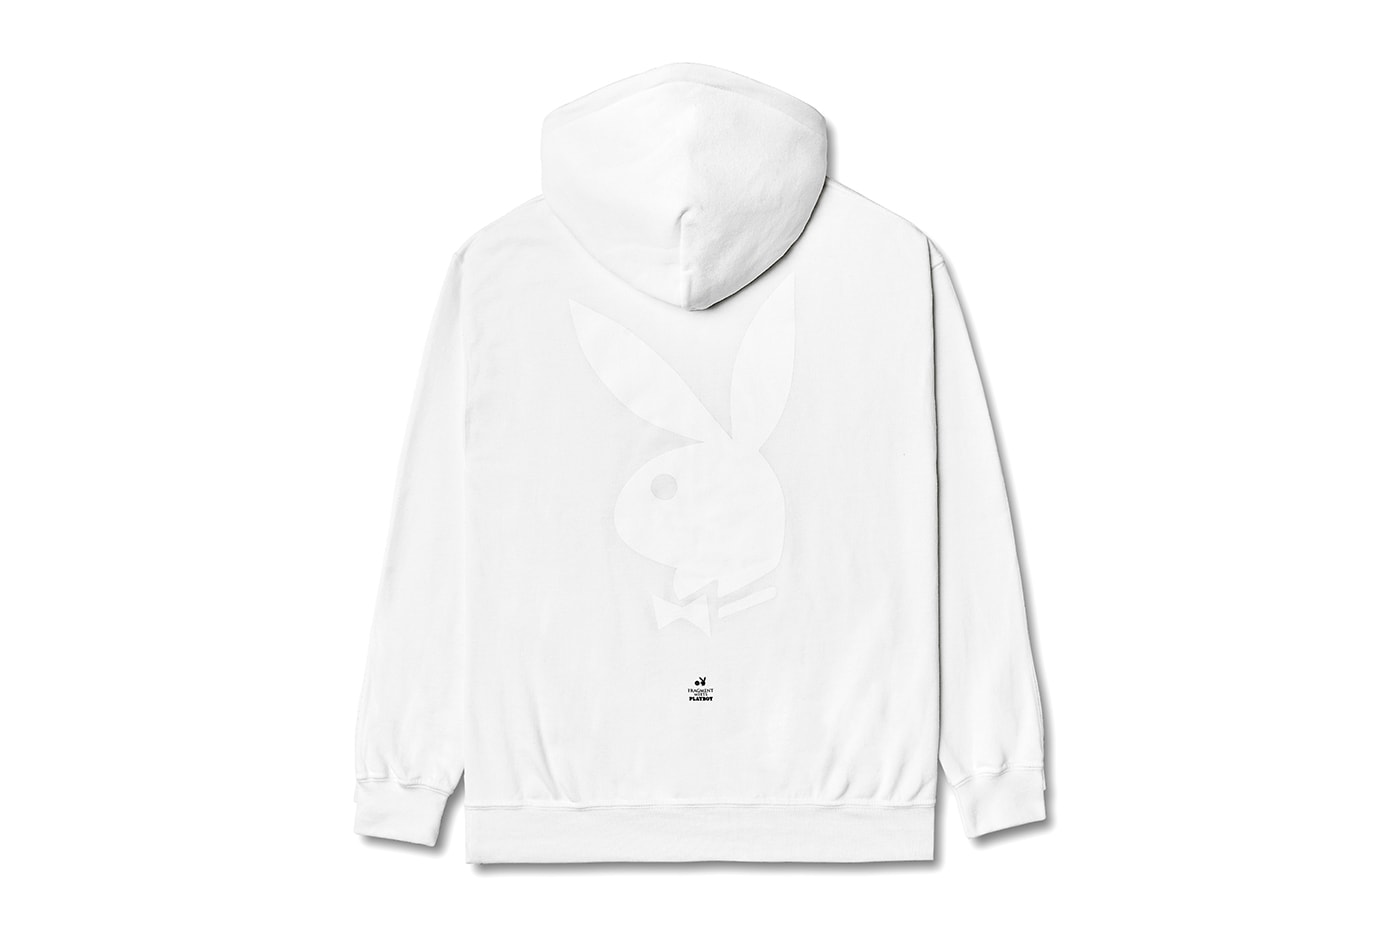 フラグメント x プレイボーイのコラボコレクションが登場 fragment design Meets Playboy Labs Collection Release Info Hoodie T shirt Hiroshi Fujiwara Buy Price Black White